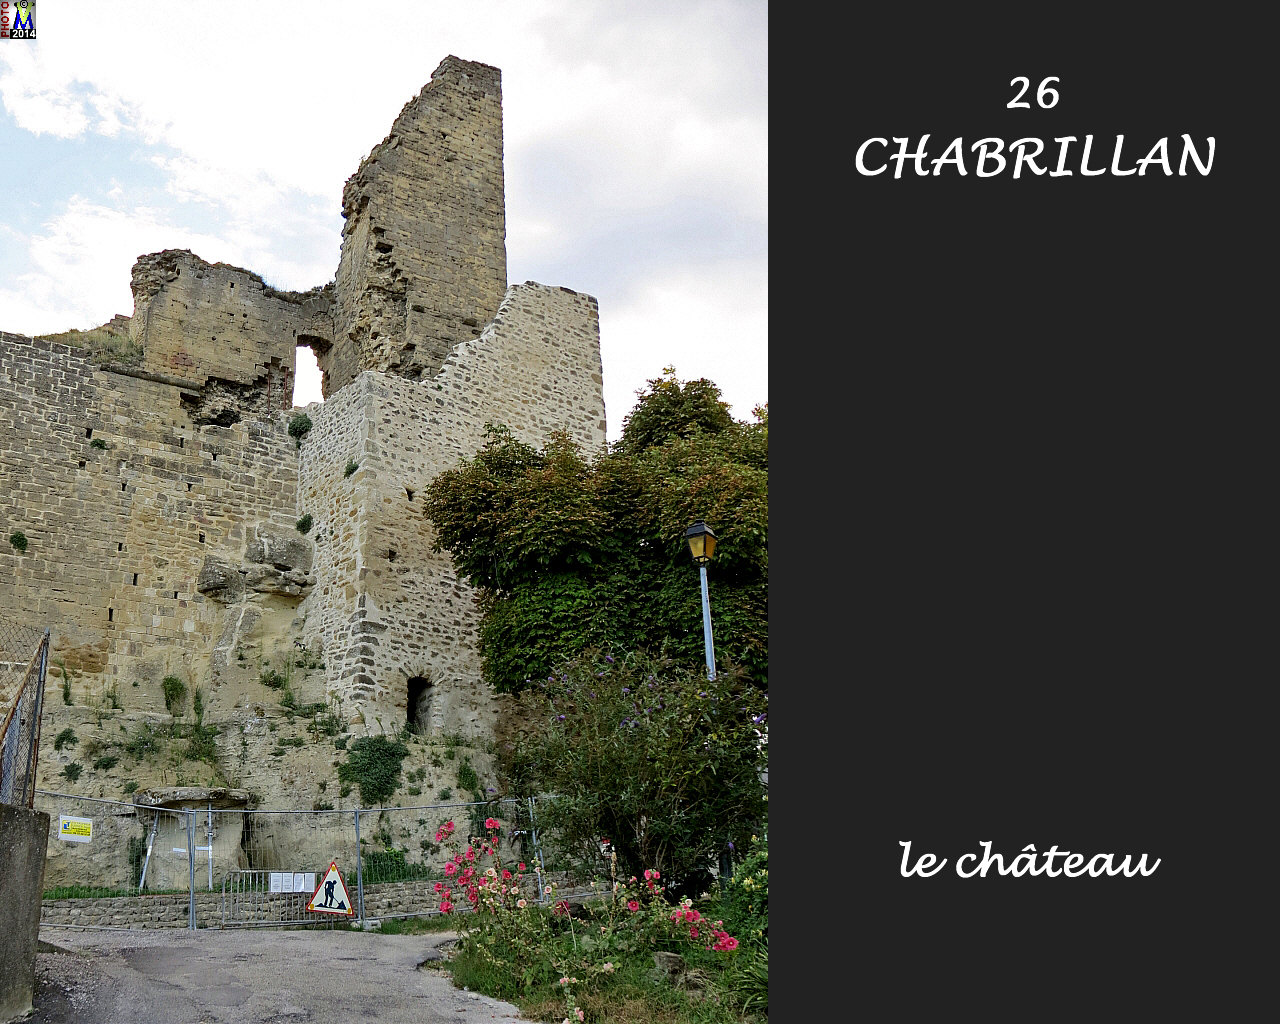 26CHABRILLAN_chateau_106.jpg